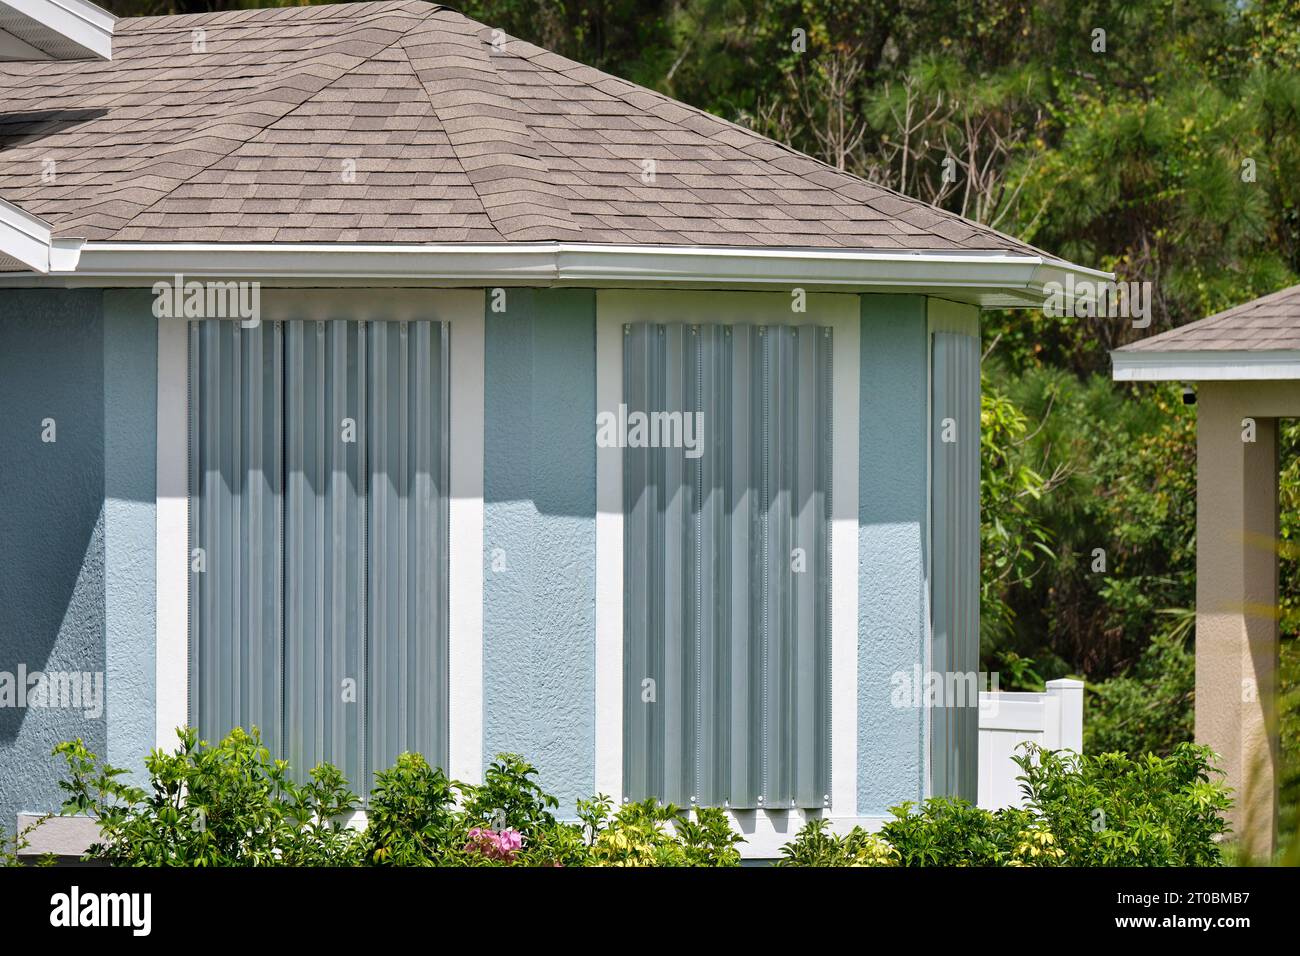 Persiane in acciaio per la protezione contro gli uragani delle finestre delle case. Misure protettive prima del disastro naturale in Florida. Foto Stock